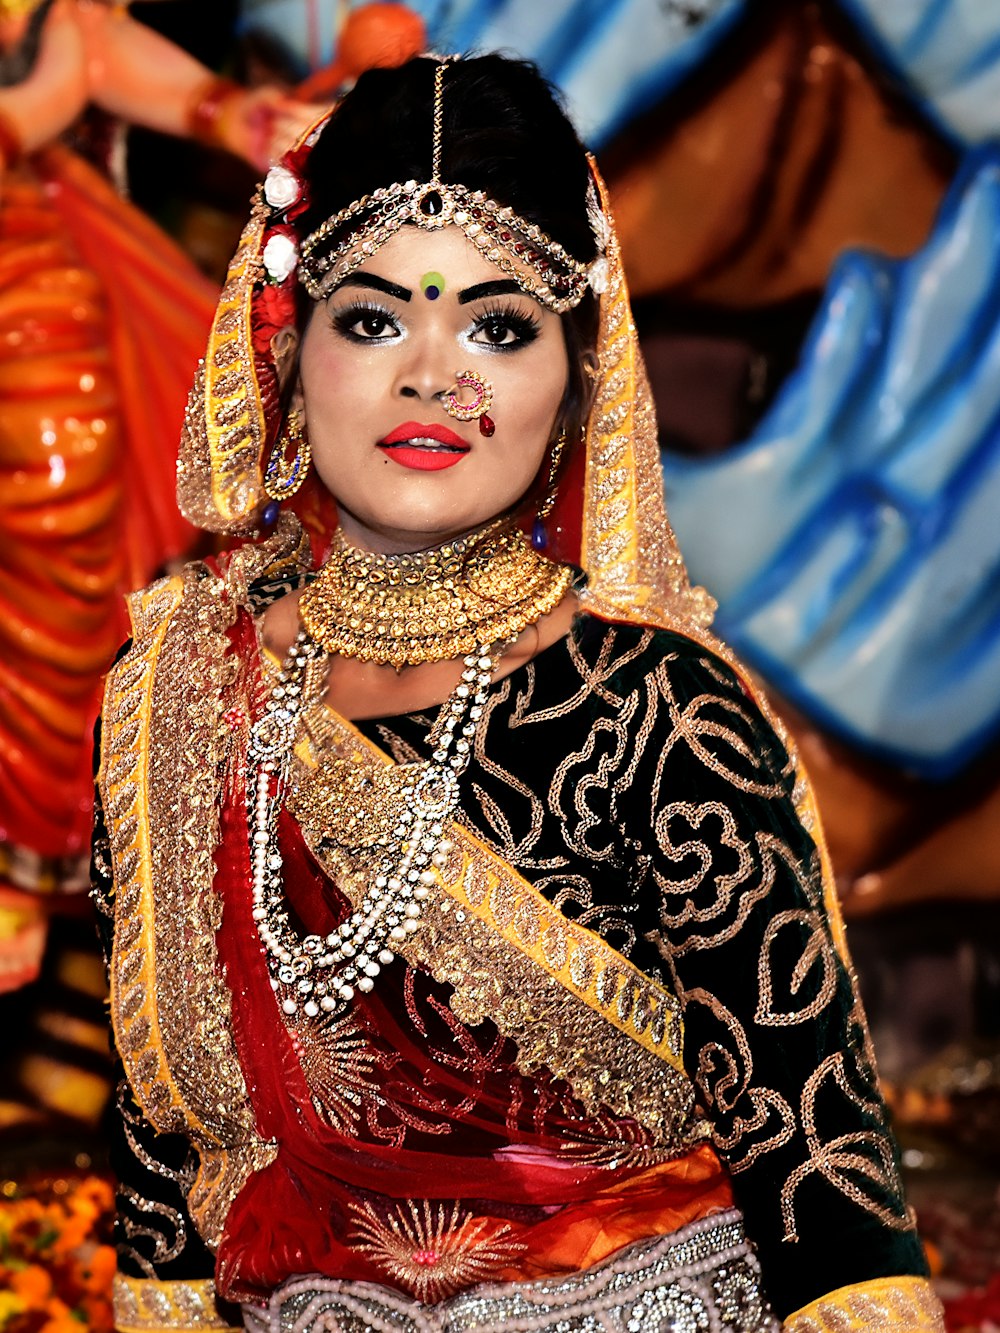 donna in abito sari rosso e oro